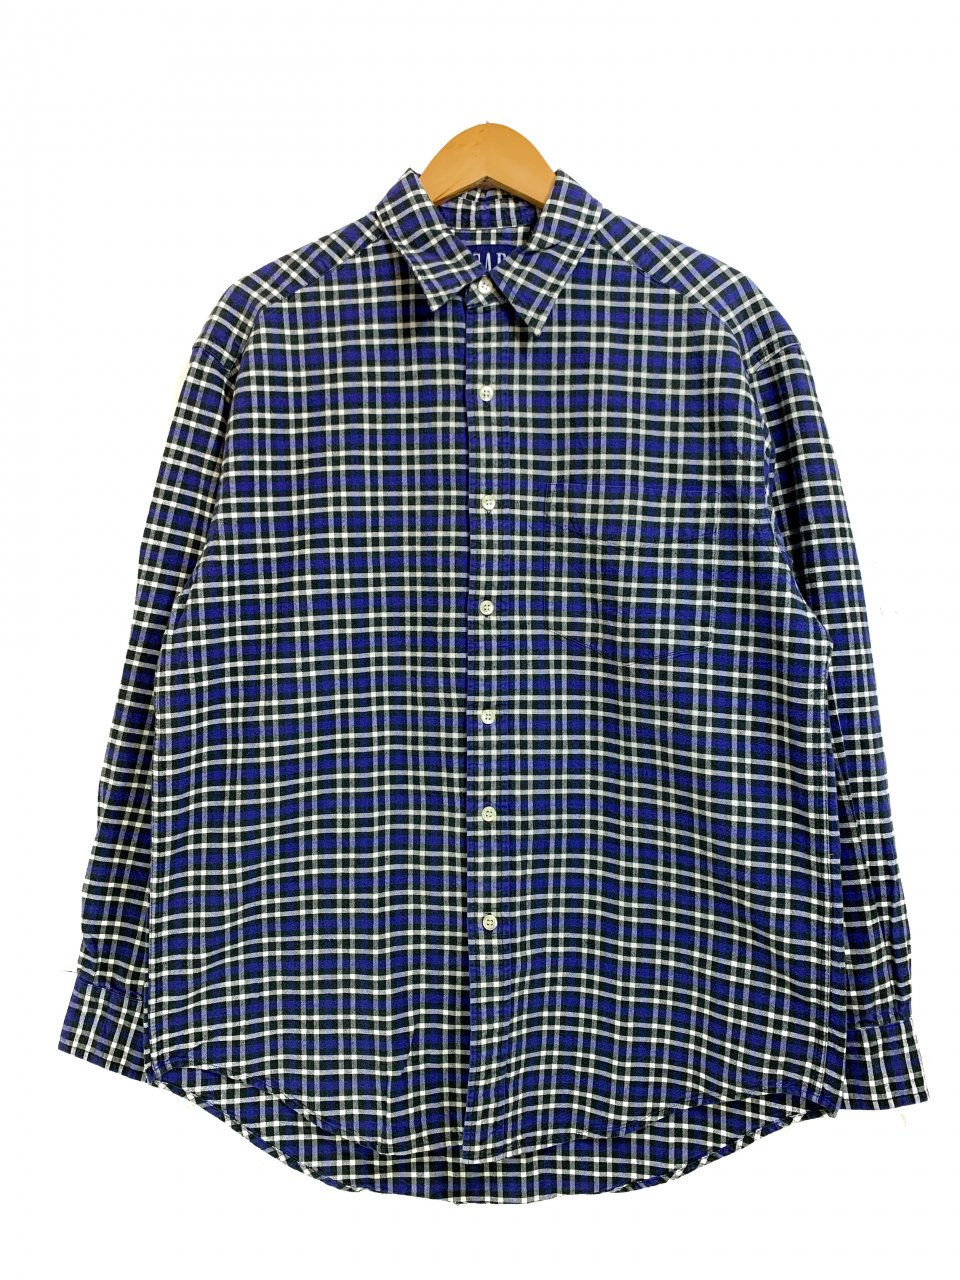 90s OLD GAP Check Cotton L/S Shirt 青 M オールドギャップ 長袖 